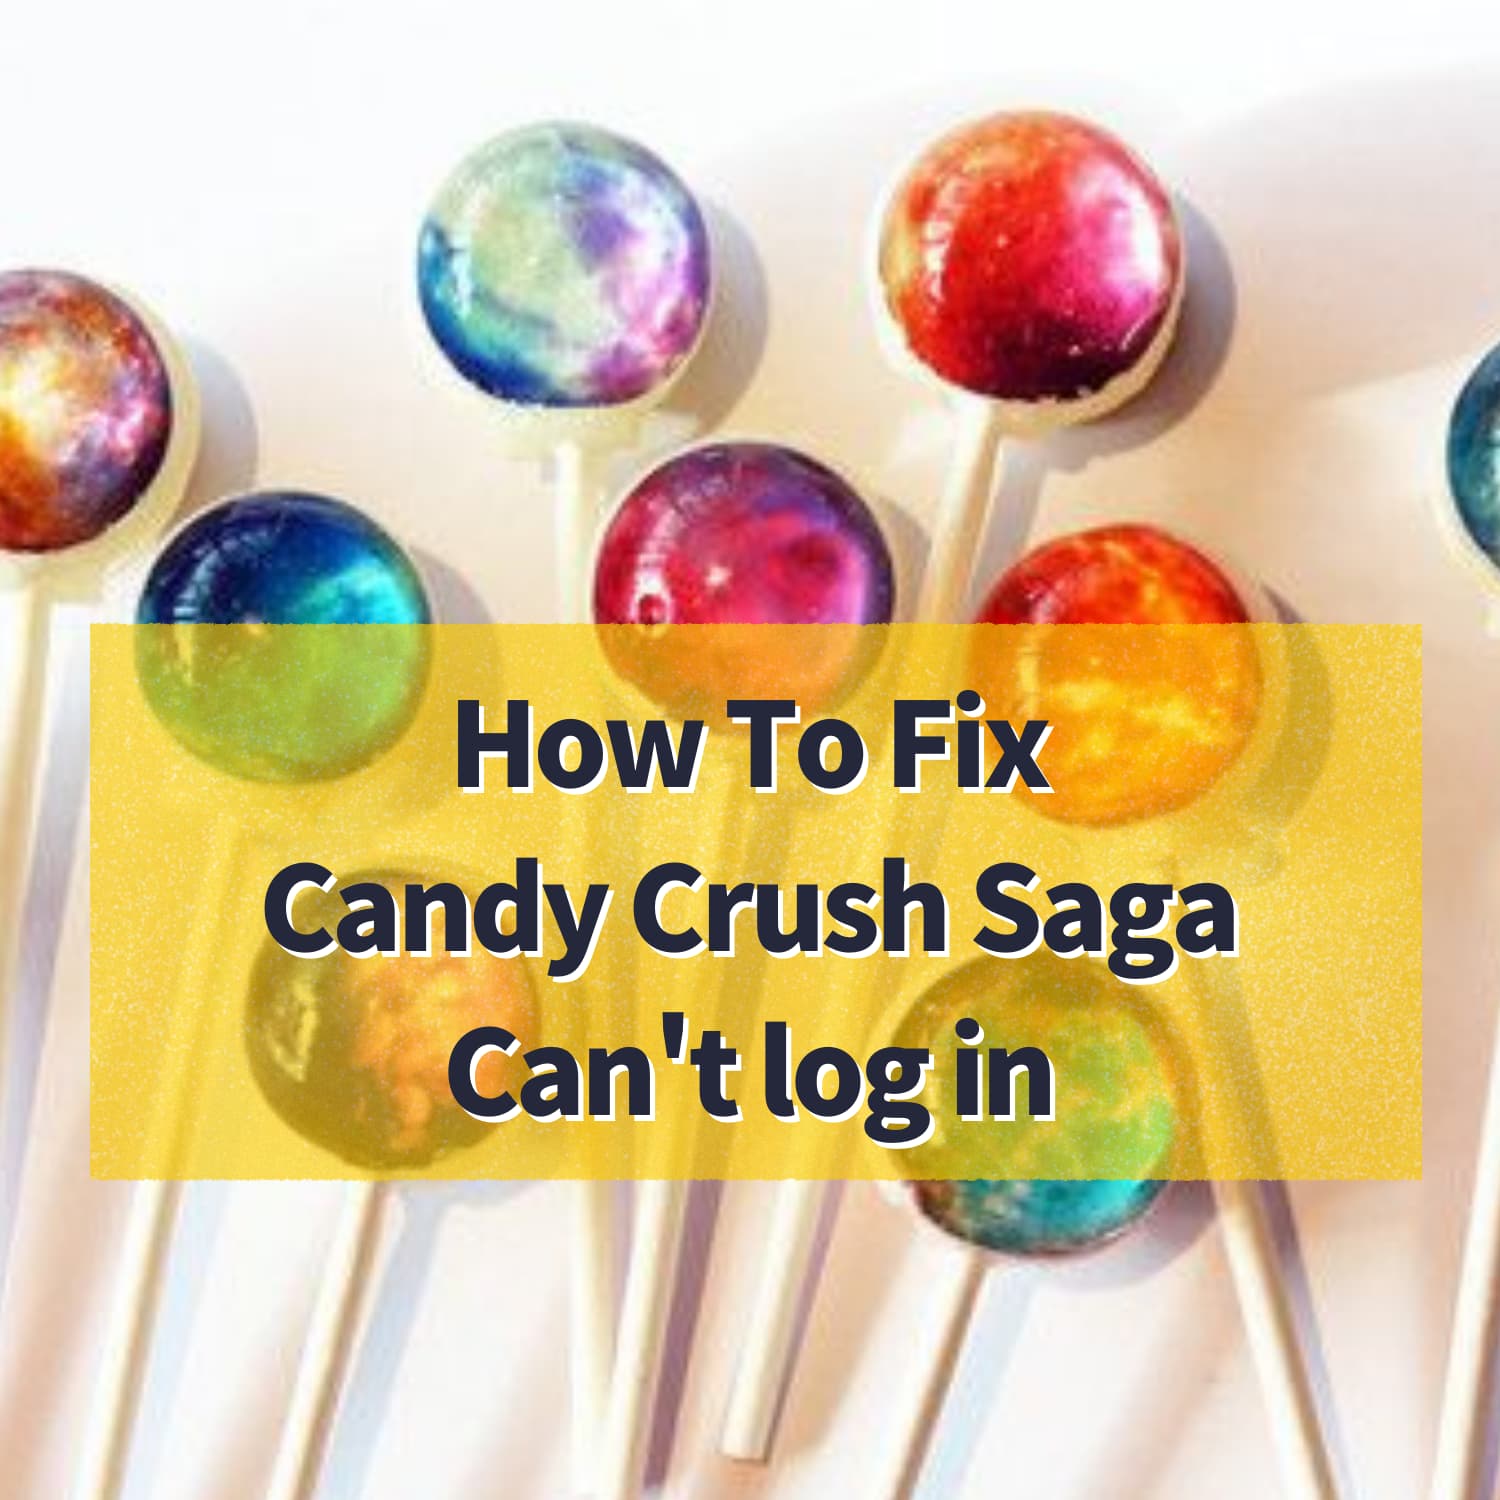 How To Fix Candy Crush Saga(CandyCrushSaga) Can't log in #CandyCrushSaga